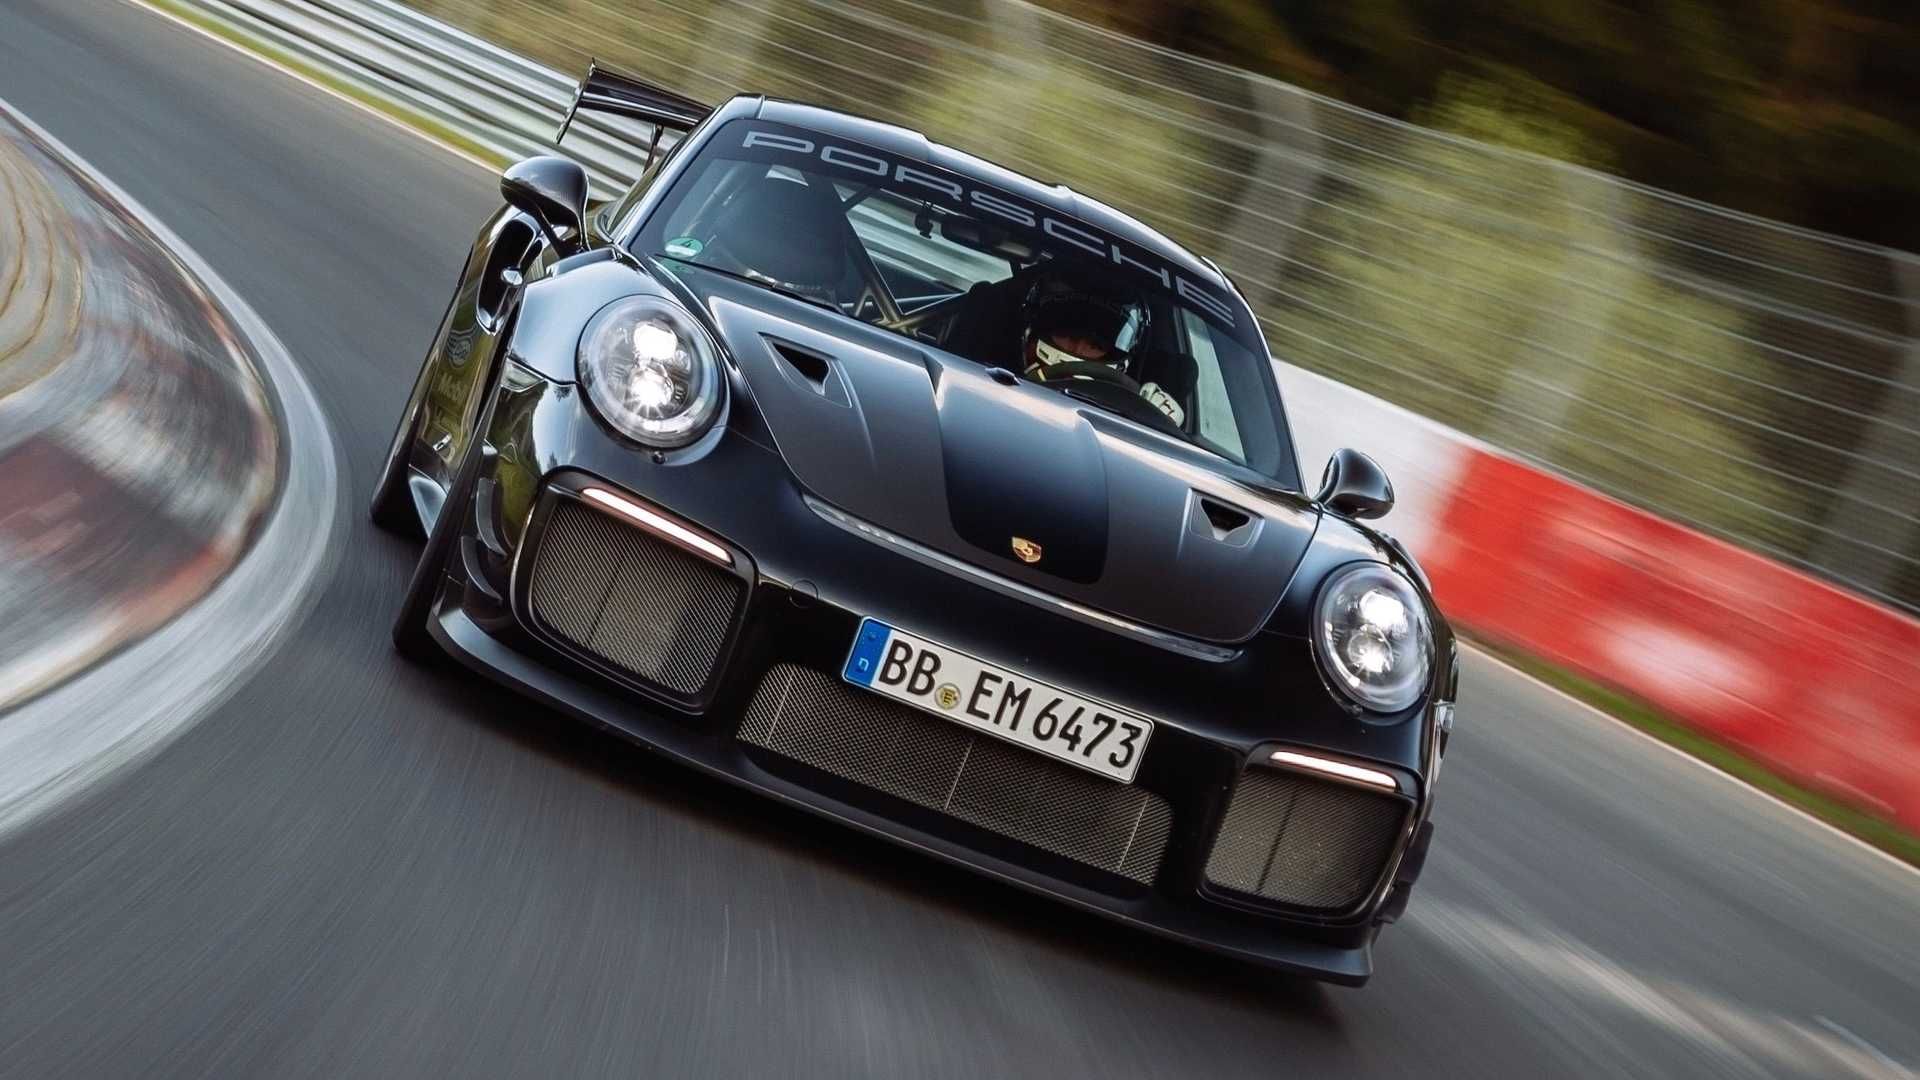 پورشه 911 جی تی 2 آر اس / Porsche 911 GT2 RS تیونینگ Manthey Racing در حال پیچیدن در پیست